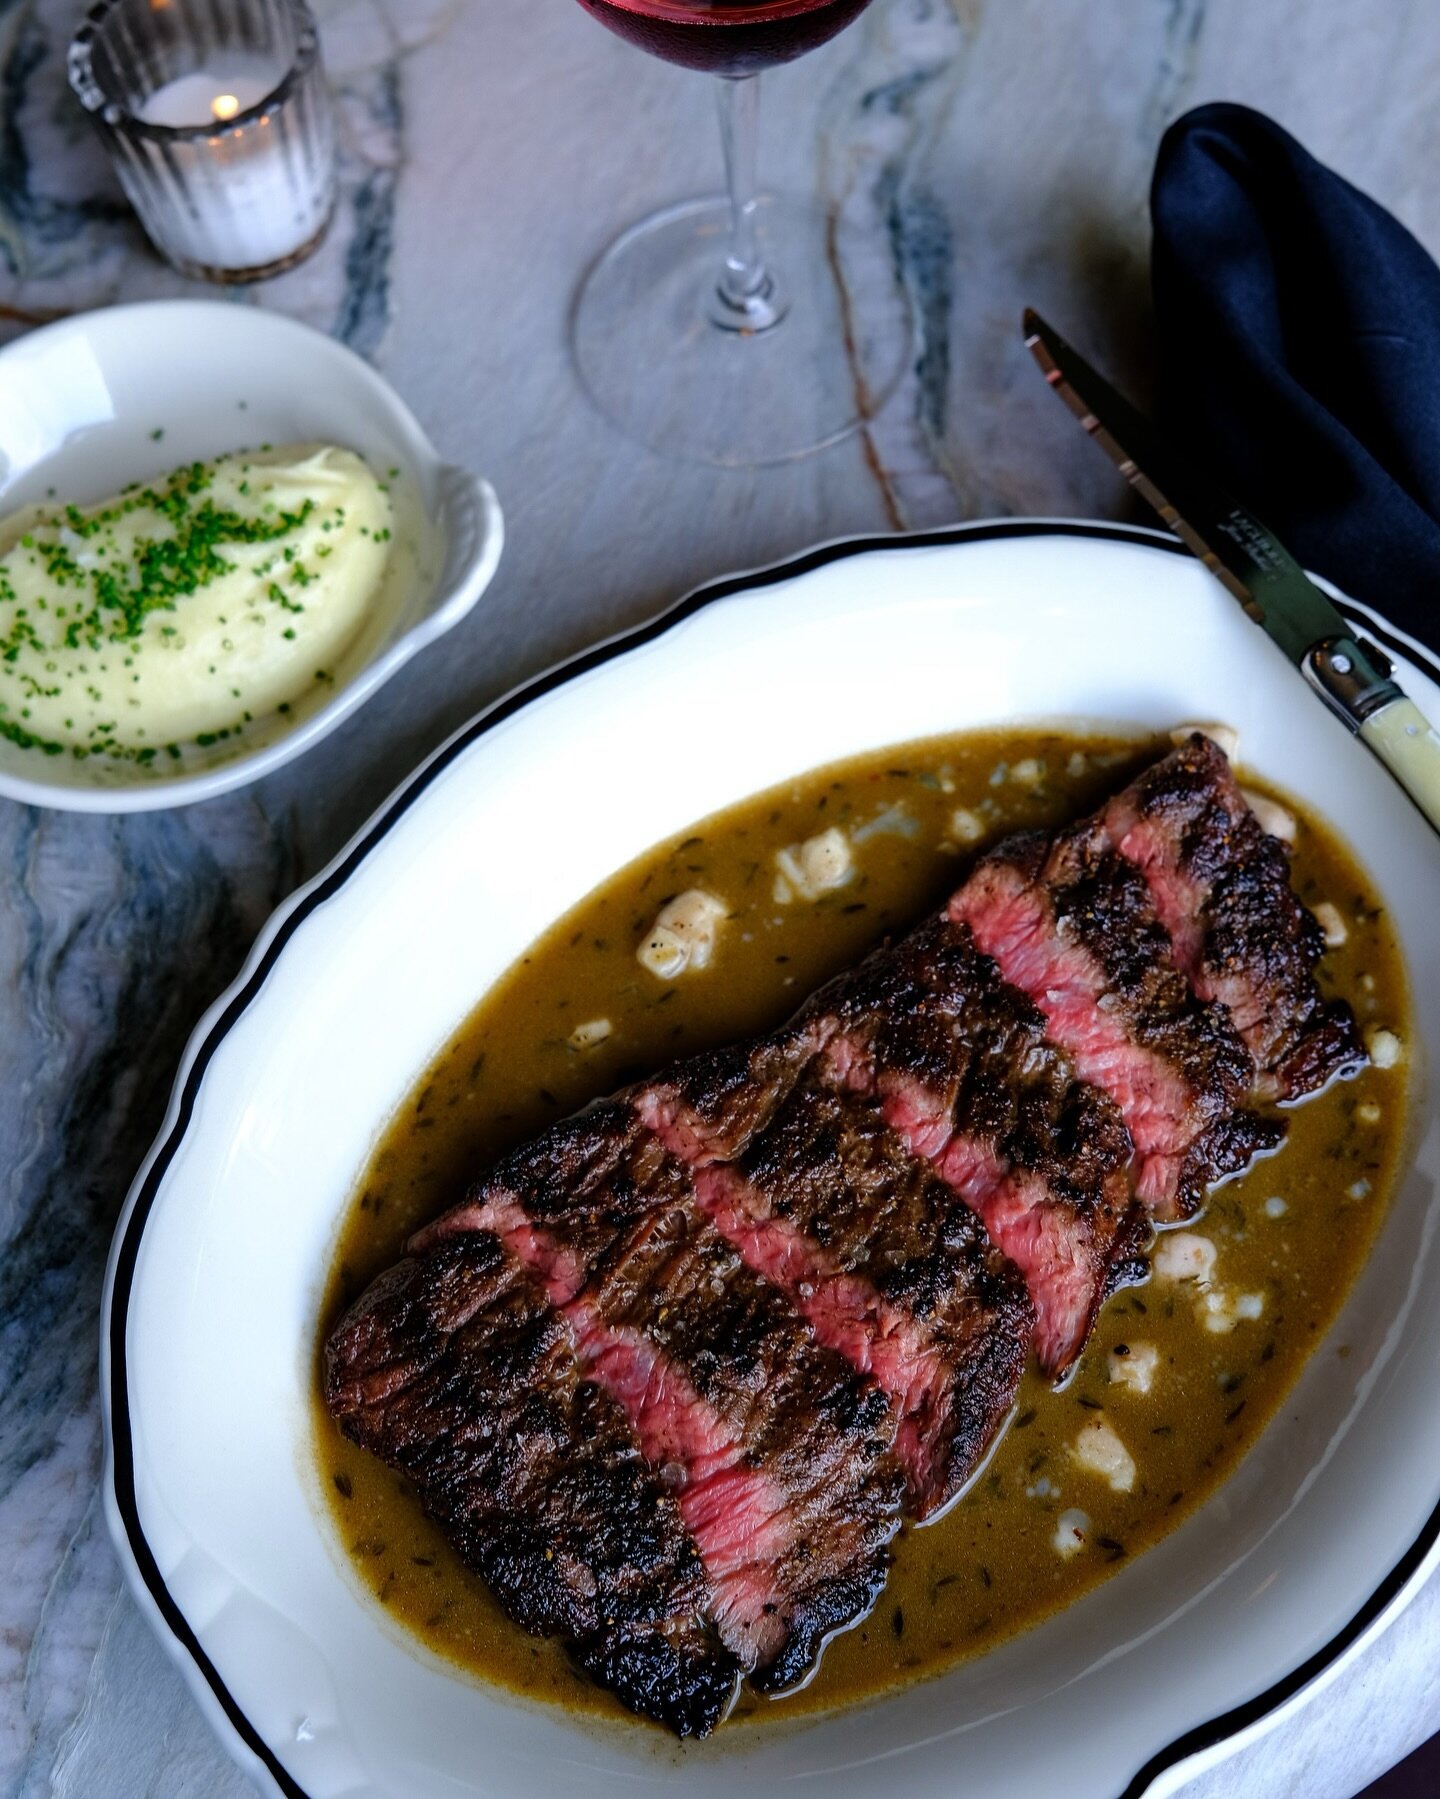 Find a cozy corner and warm up with steak au poivre &amp; potato pur&eacute;e! Open at 4:00 🥳

📸: @jenni.salami